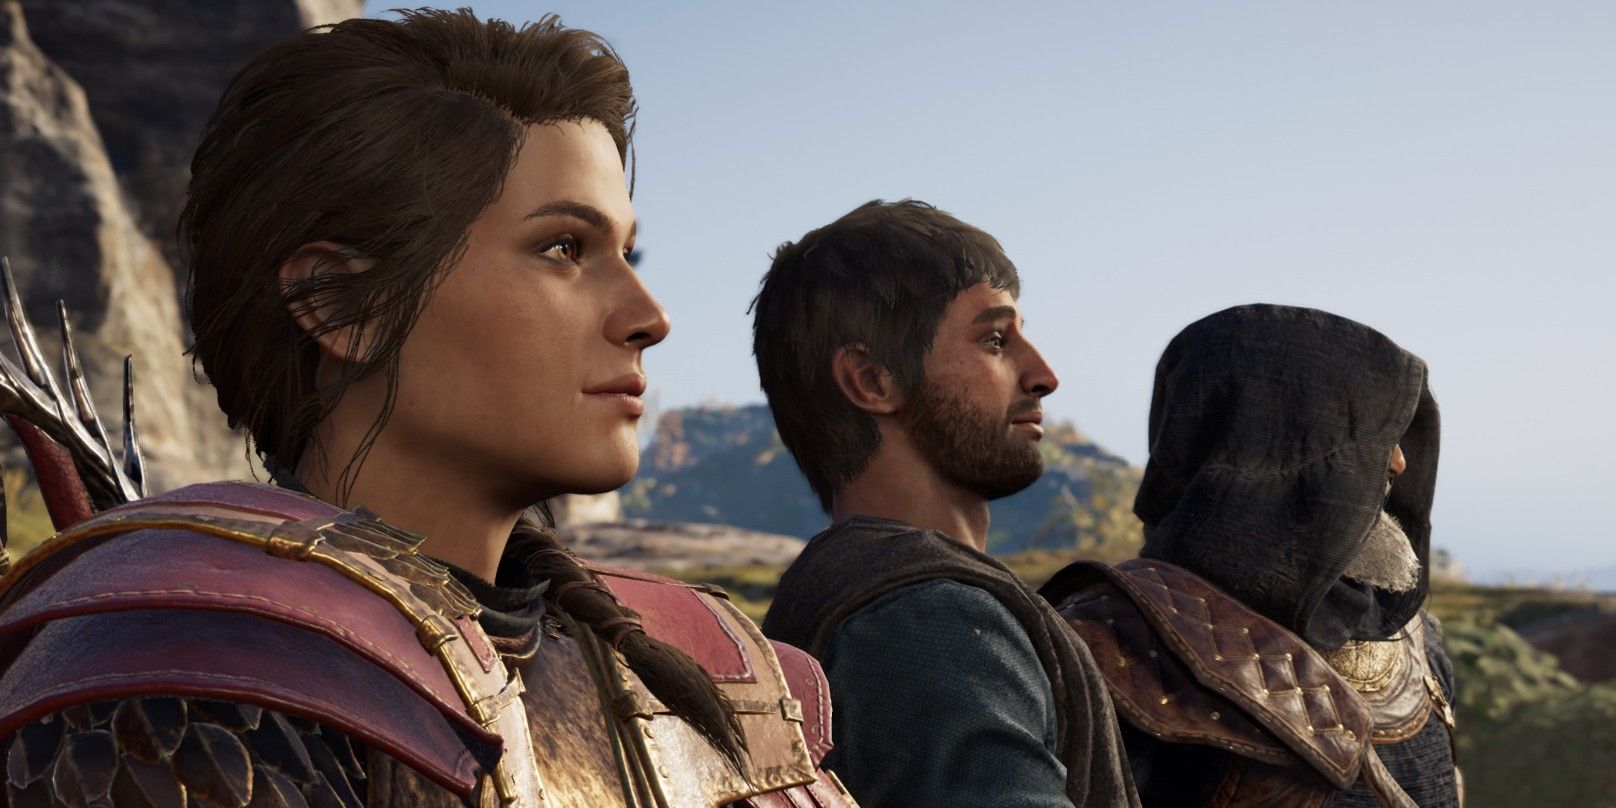 Kassandra, Natakas, and Darius in Assassin's Creed Odyssey